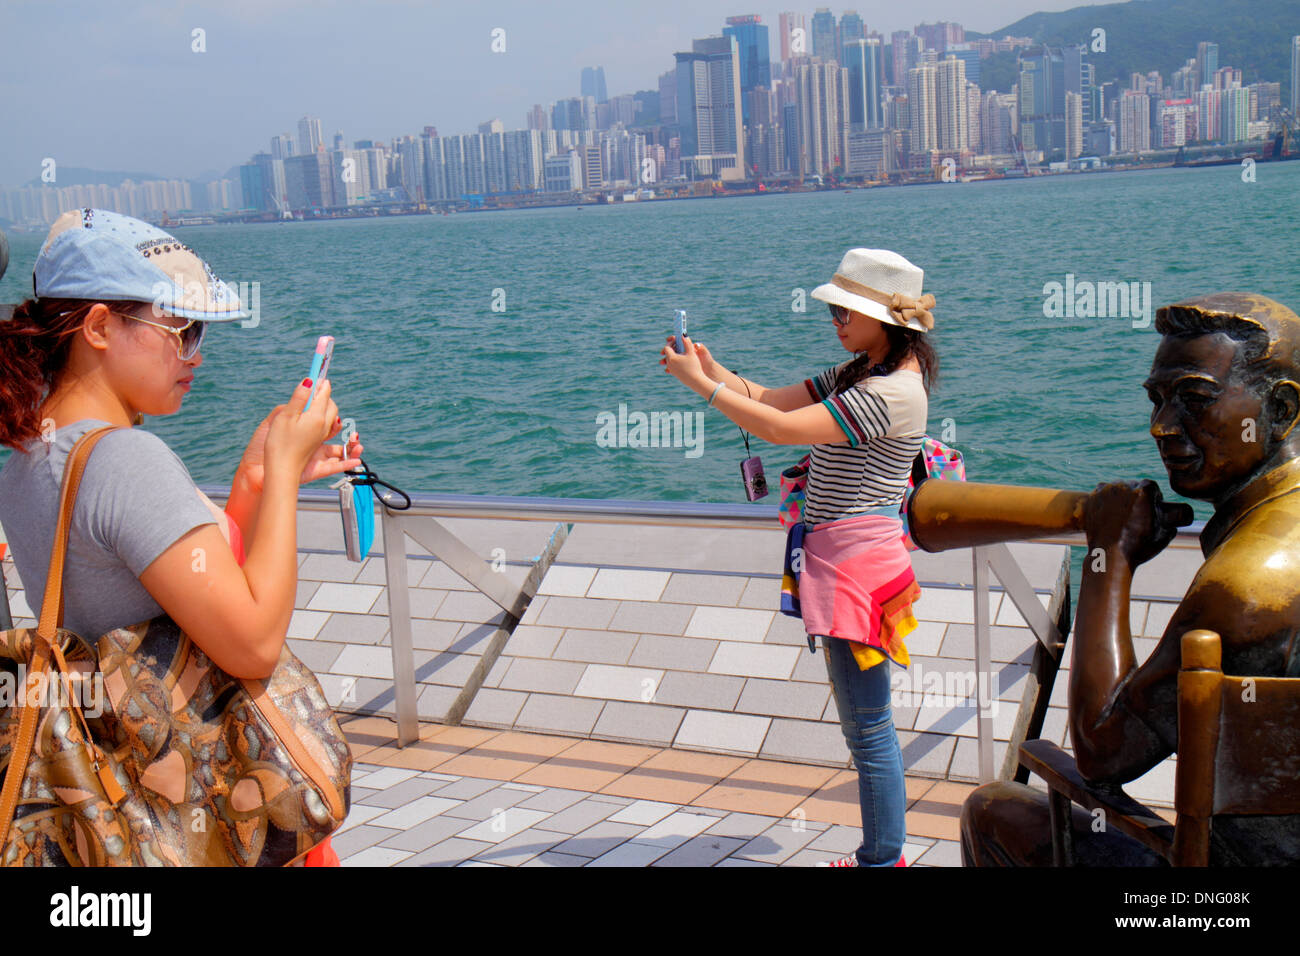 Hongkong China, HK, Chinesisch, Kowloon, Tsim Sha Tsui, Avenue of the Stars, Victoria Harbour, Hafen, Uferpromenade, asiatischer Erwachsener, Erwachsene, weibliche Wome Stockfoto